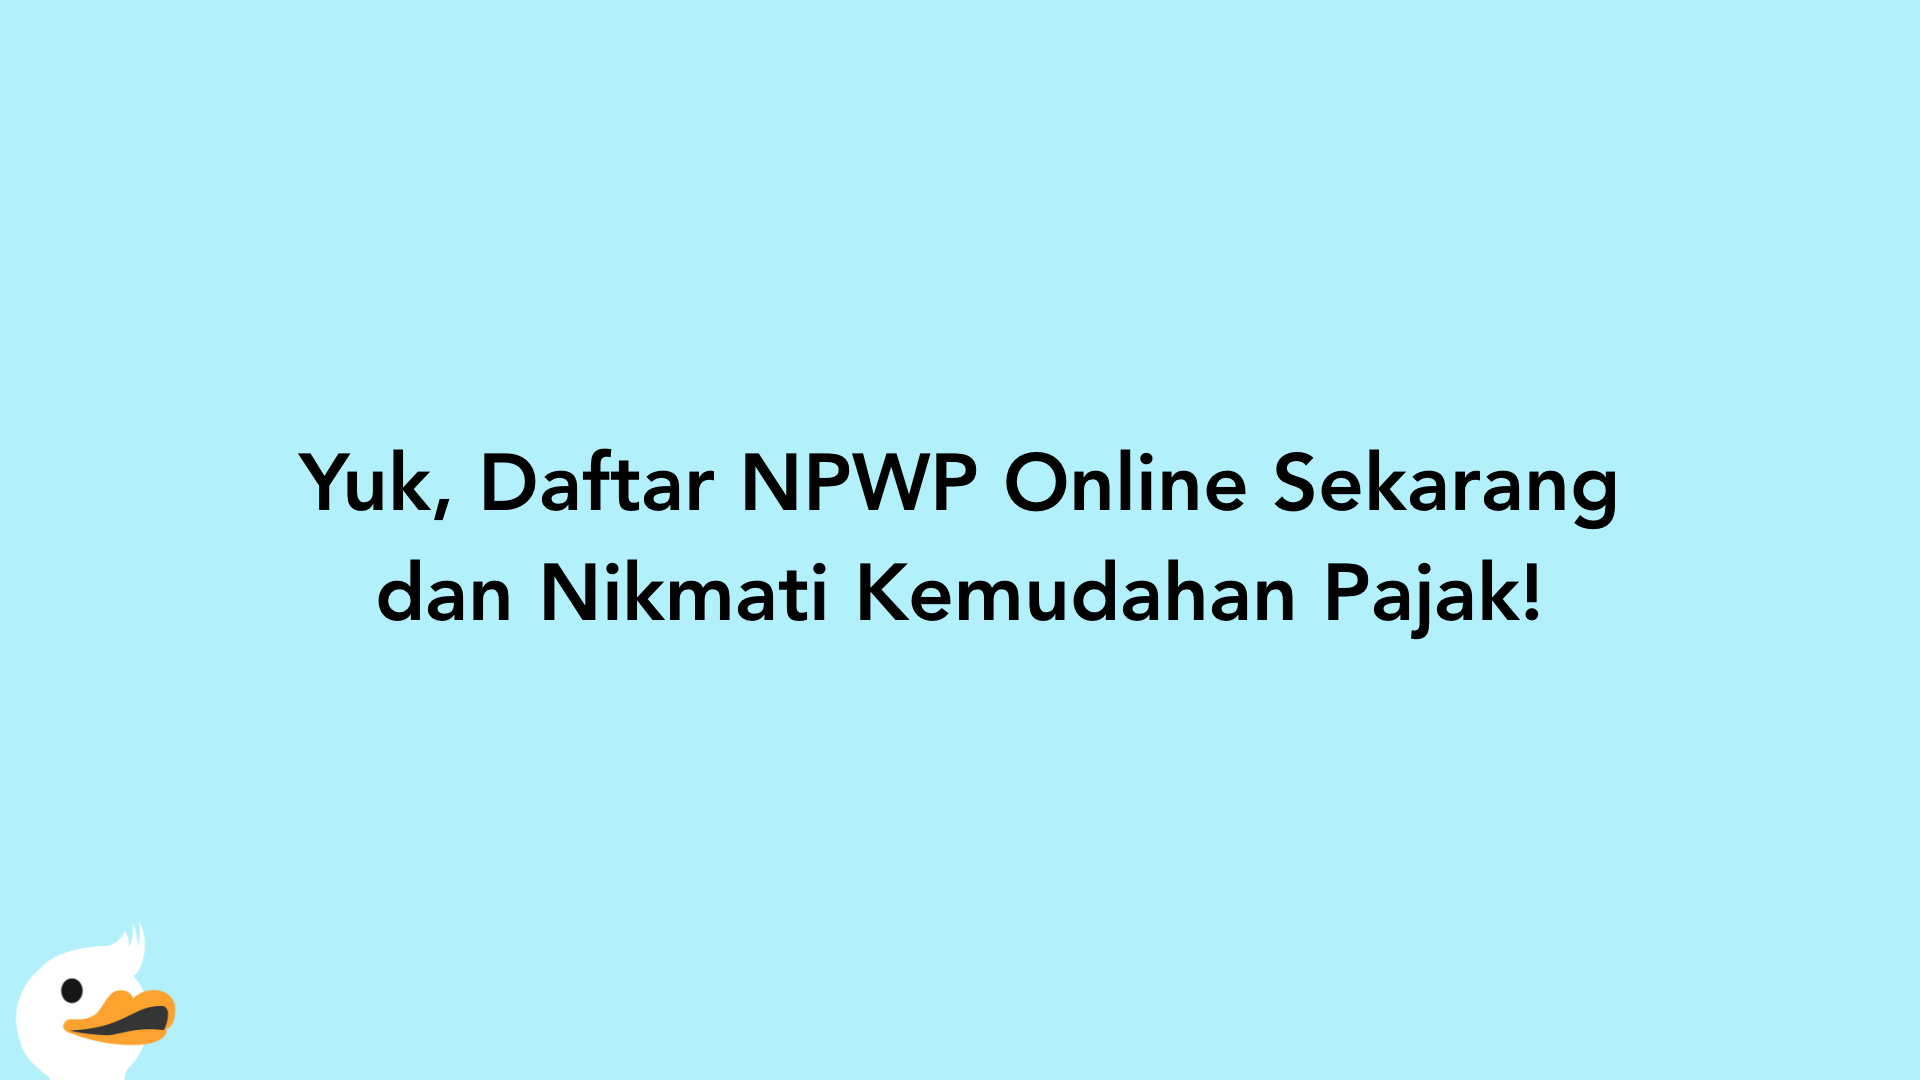 Yuk, Daftar NPWP Online Sekarang dan Nikmati Kemudahan Pajak!